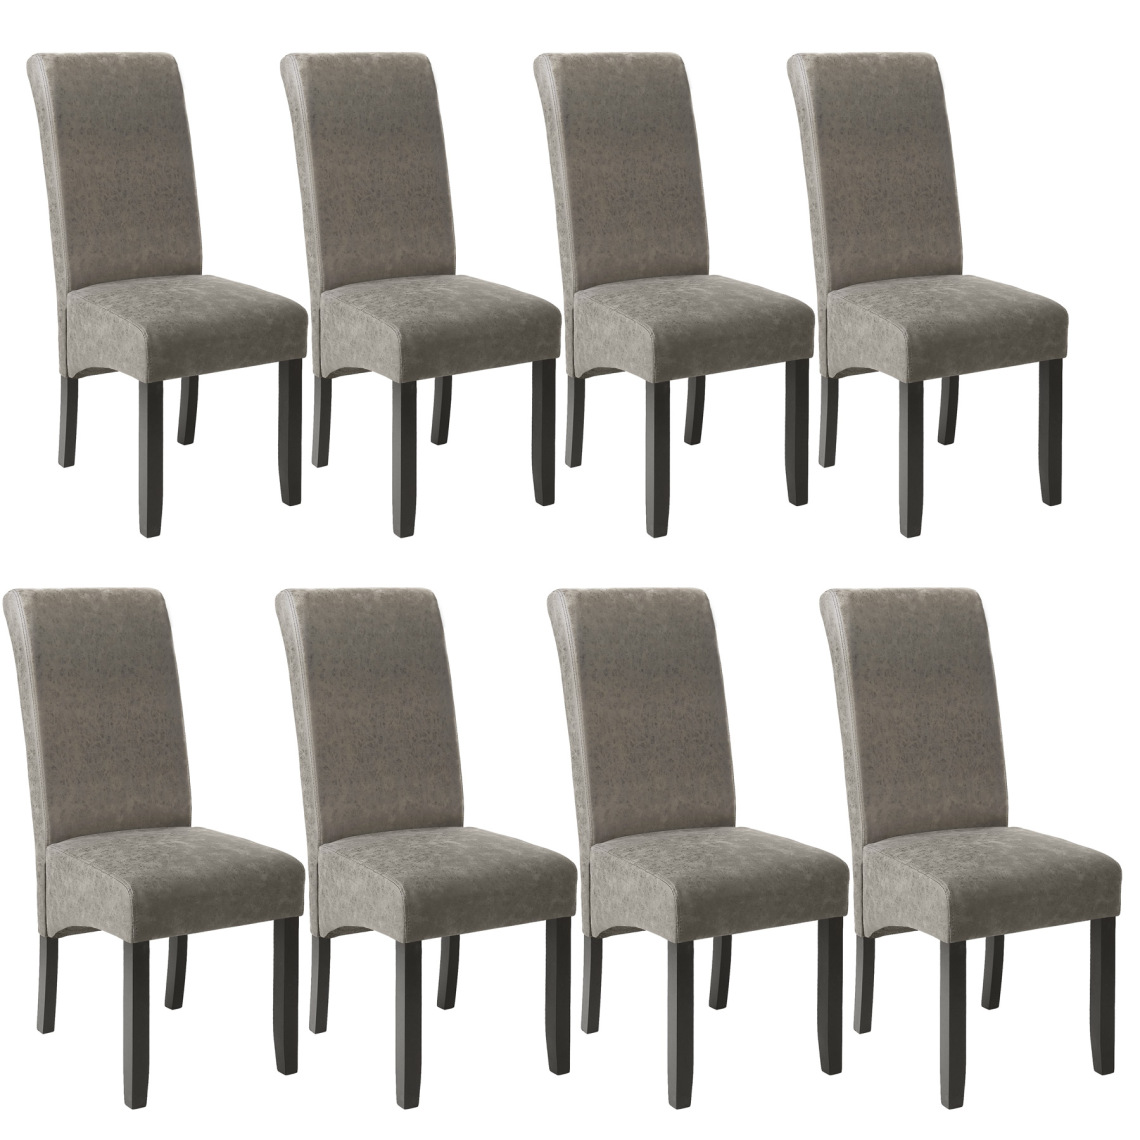 Tectake - Lot de 8 chaises aspect cuir - gris marbré - Chaises